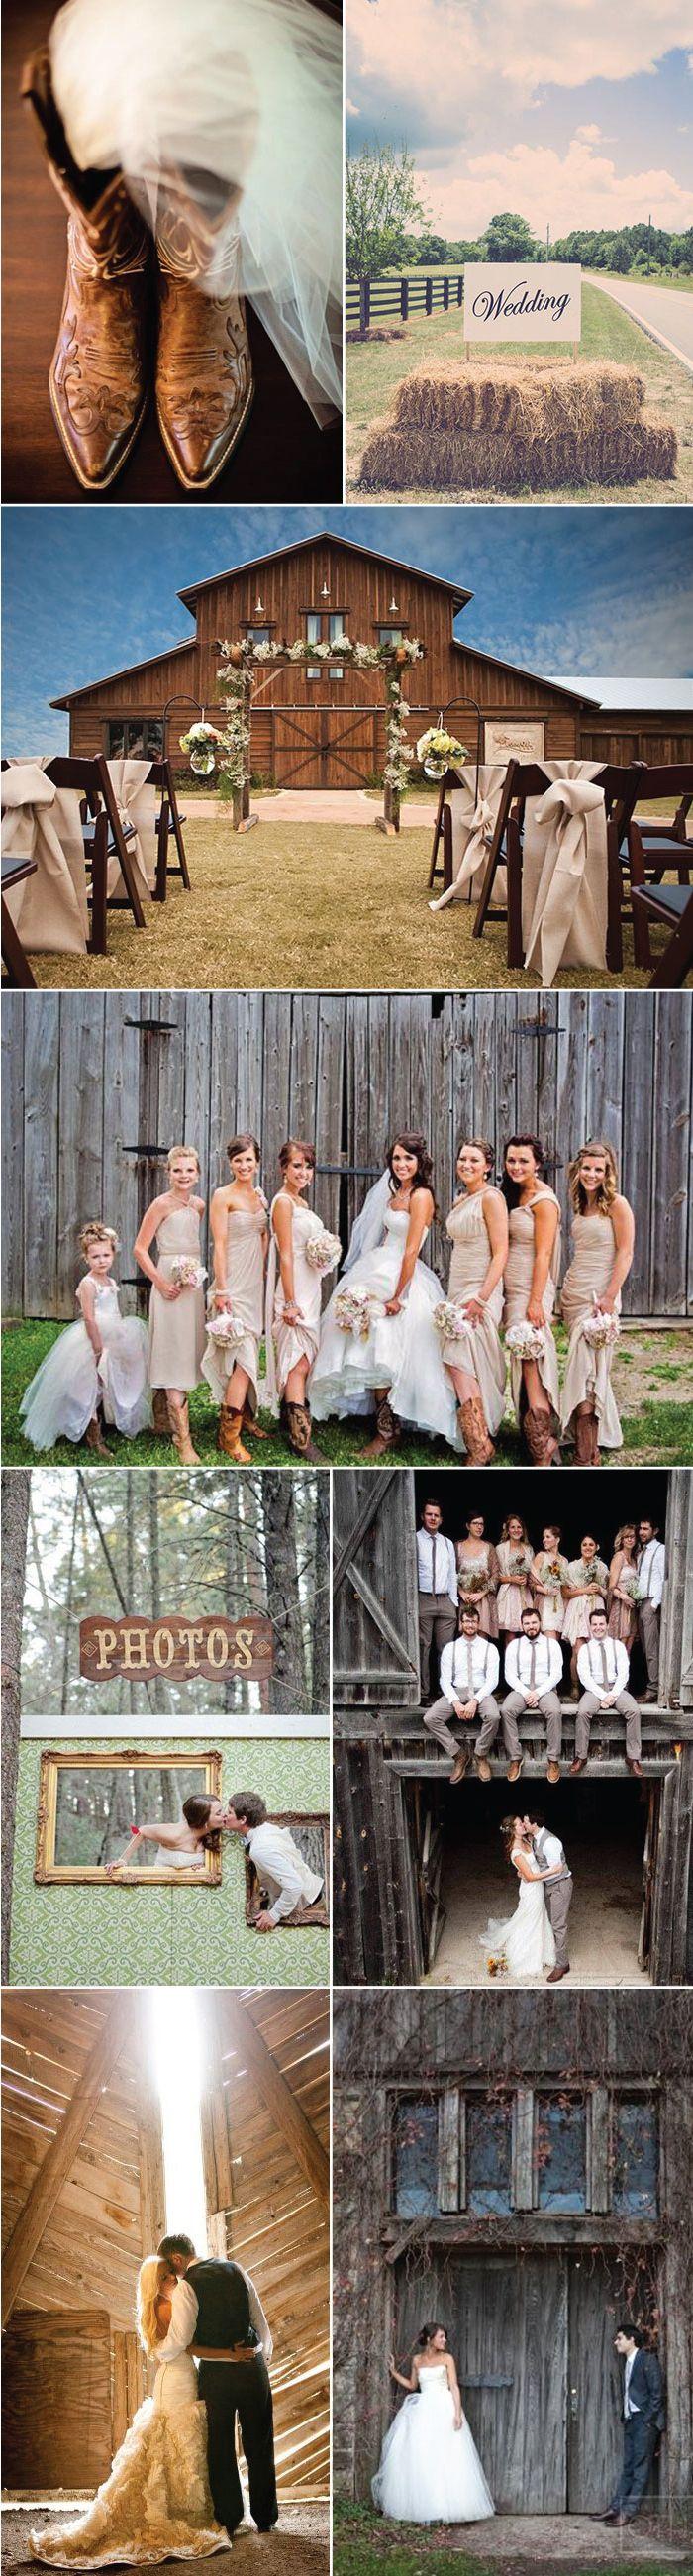 Mariage - Wedding Ideas For Barn Weddings   